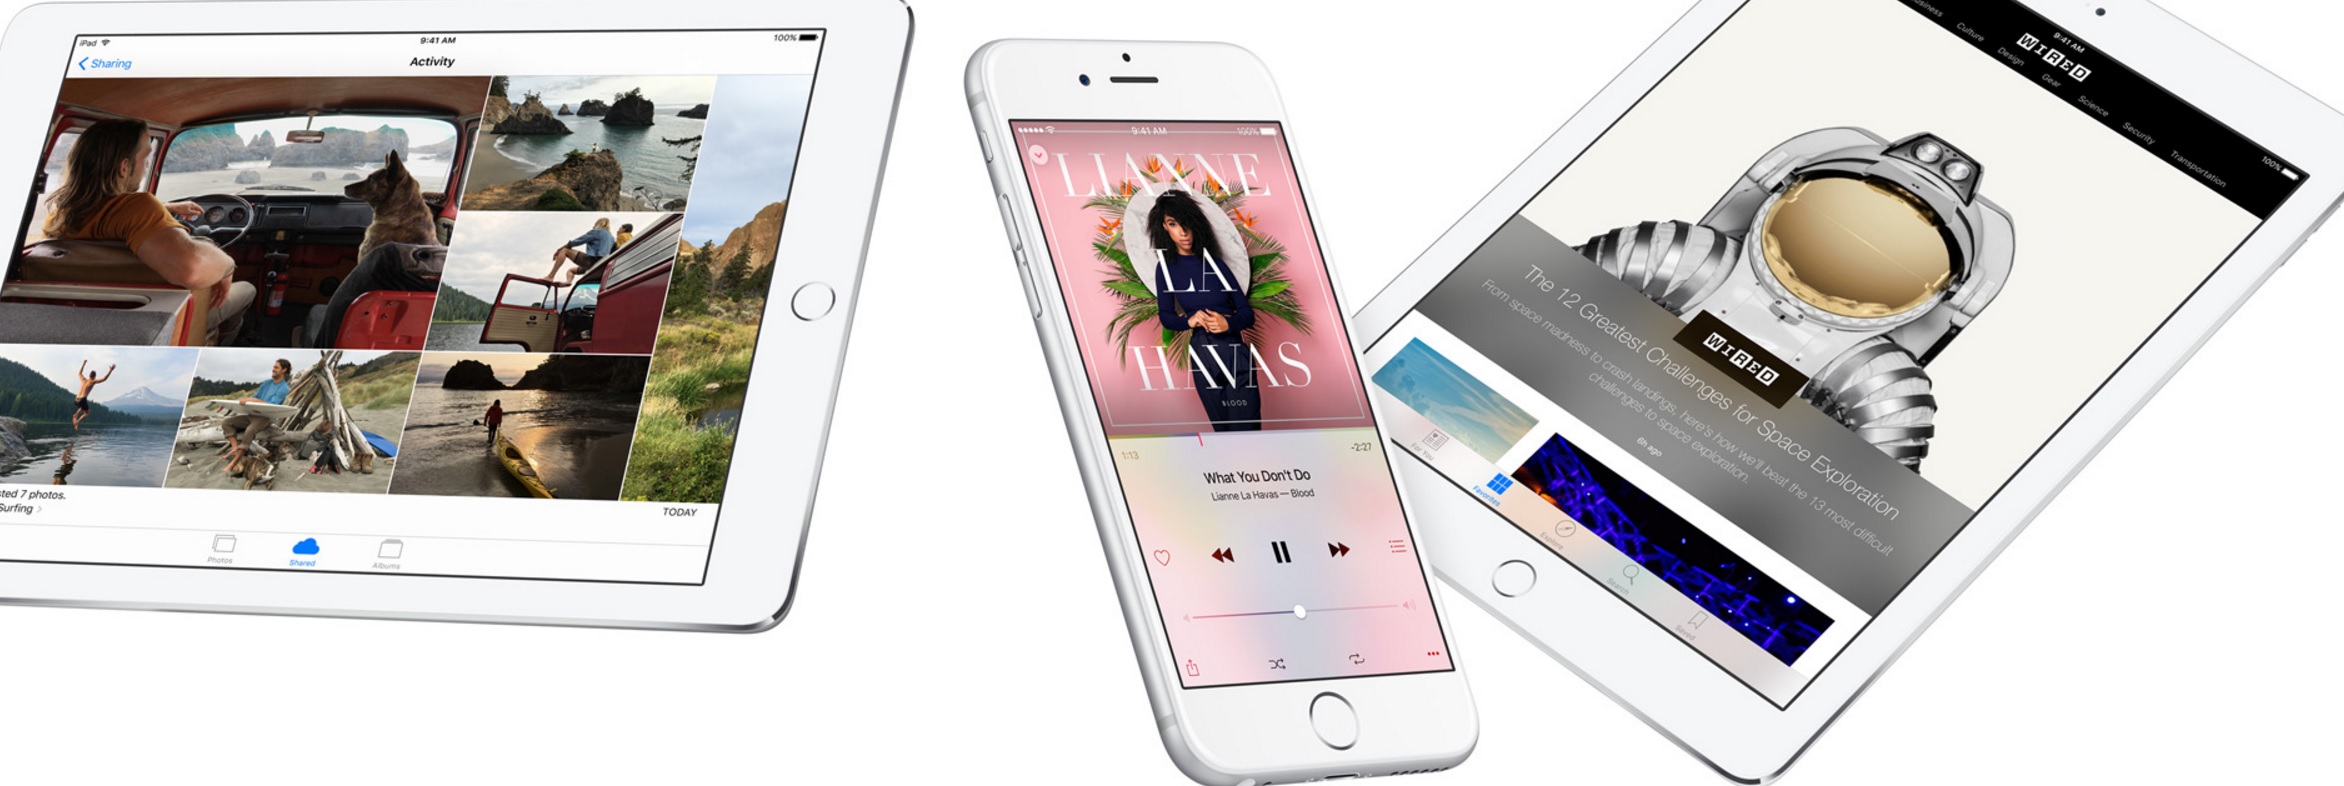 Apple kutter hodetelefonutgangen på årets iPhone, gjør den vanntett og skal oppgradere iOS med nytt grensesnitt. Også Apple Music får nytt useende. Jo, også oppgraderes MacBook med Touch ID og et nytt OLED-panel senere i år.